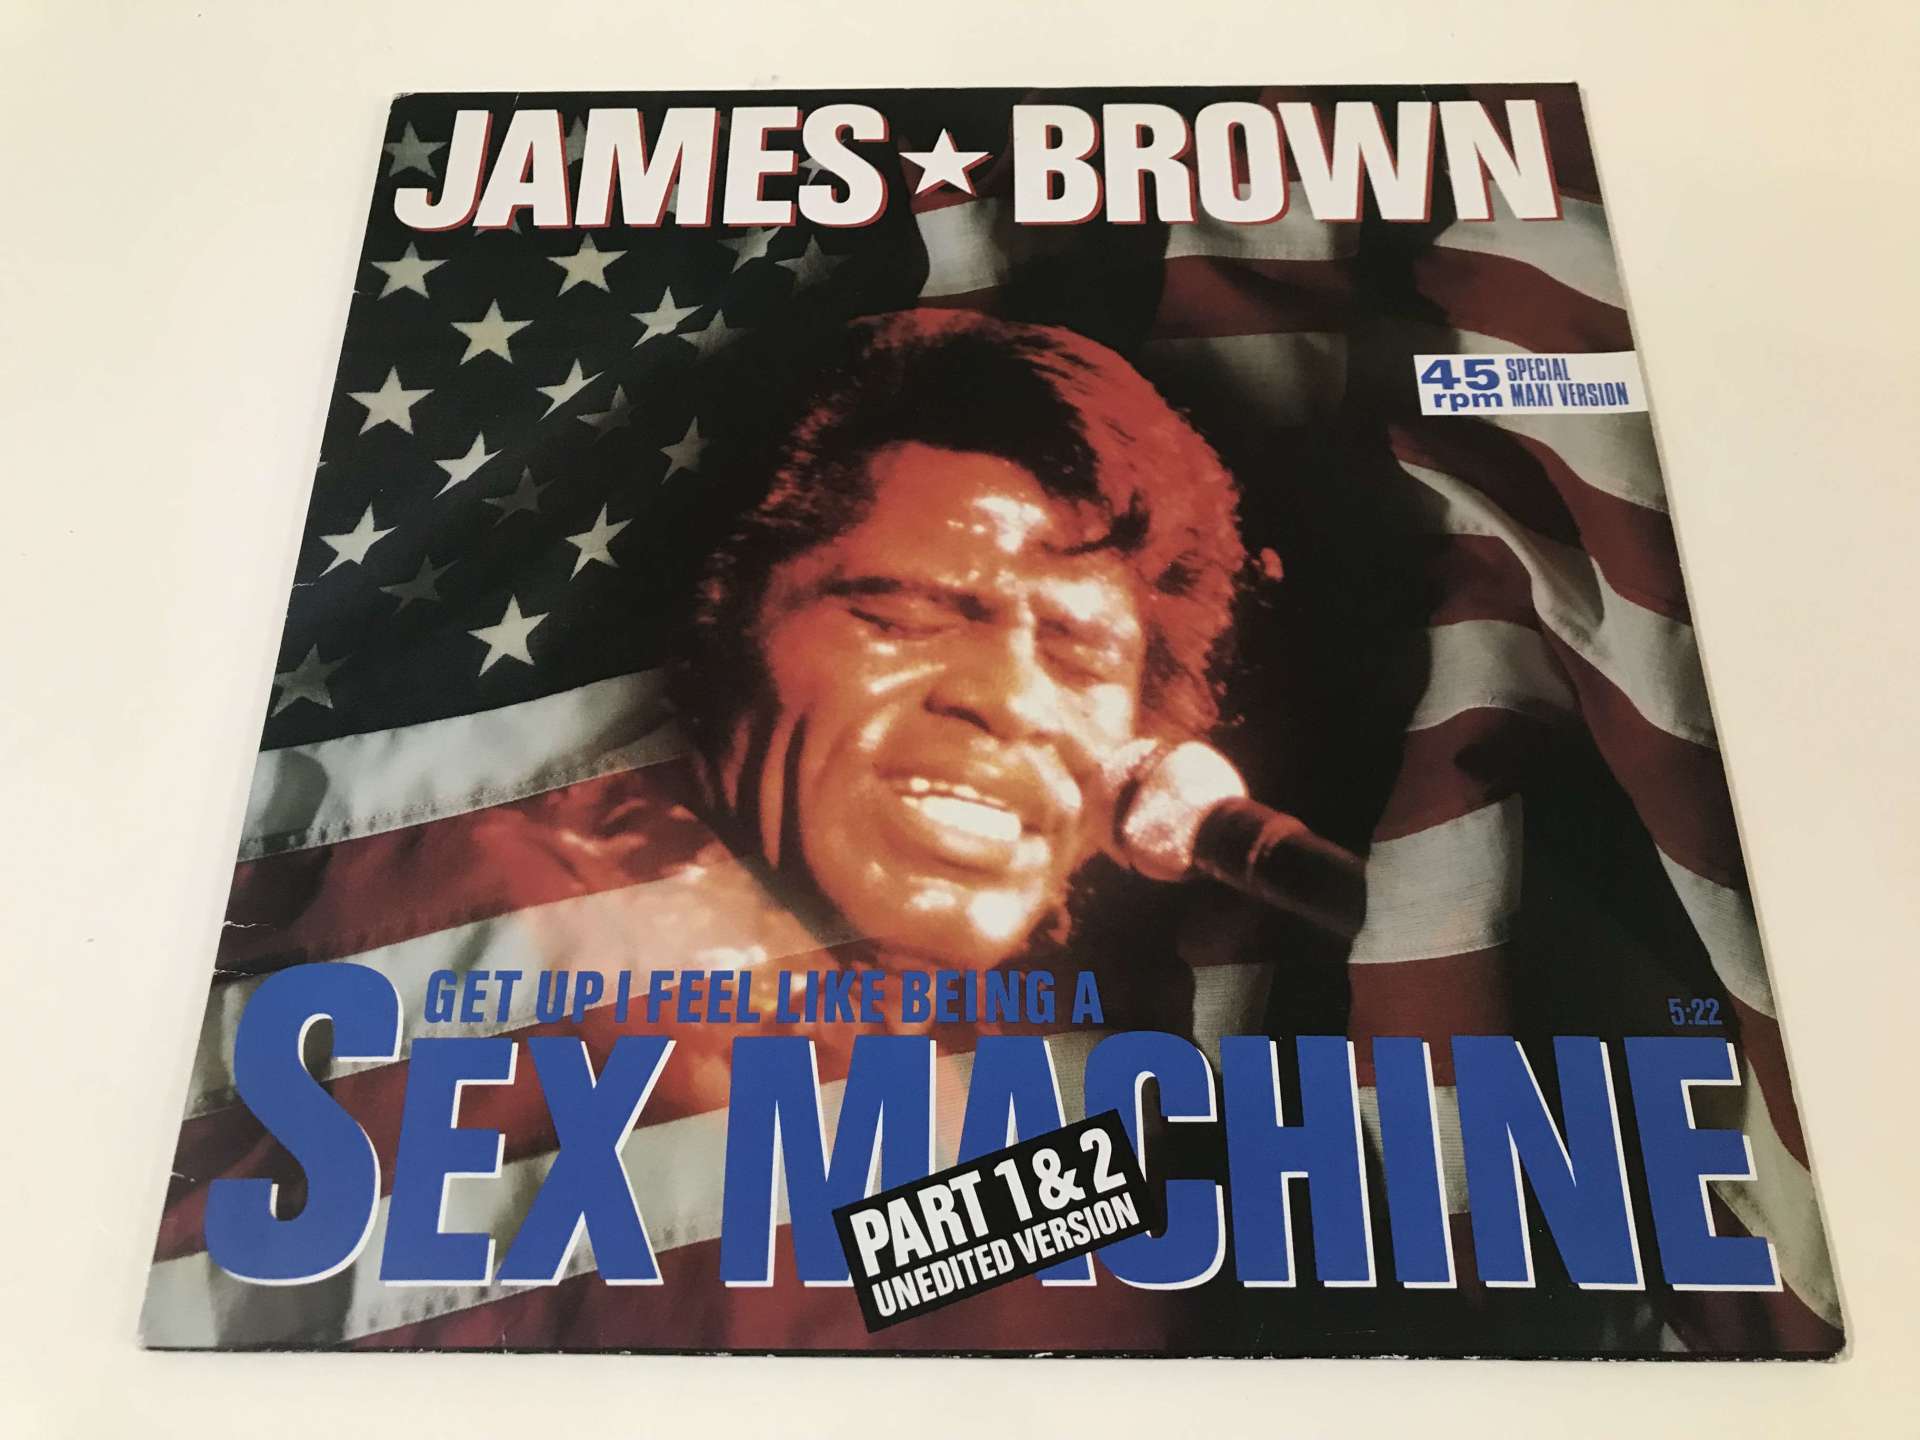 James Brown – Sex Machine (Part 1 & 2 Unedited Version)